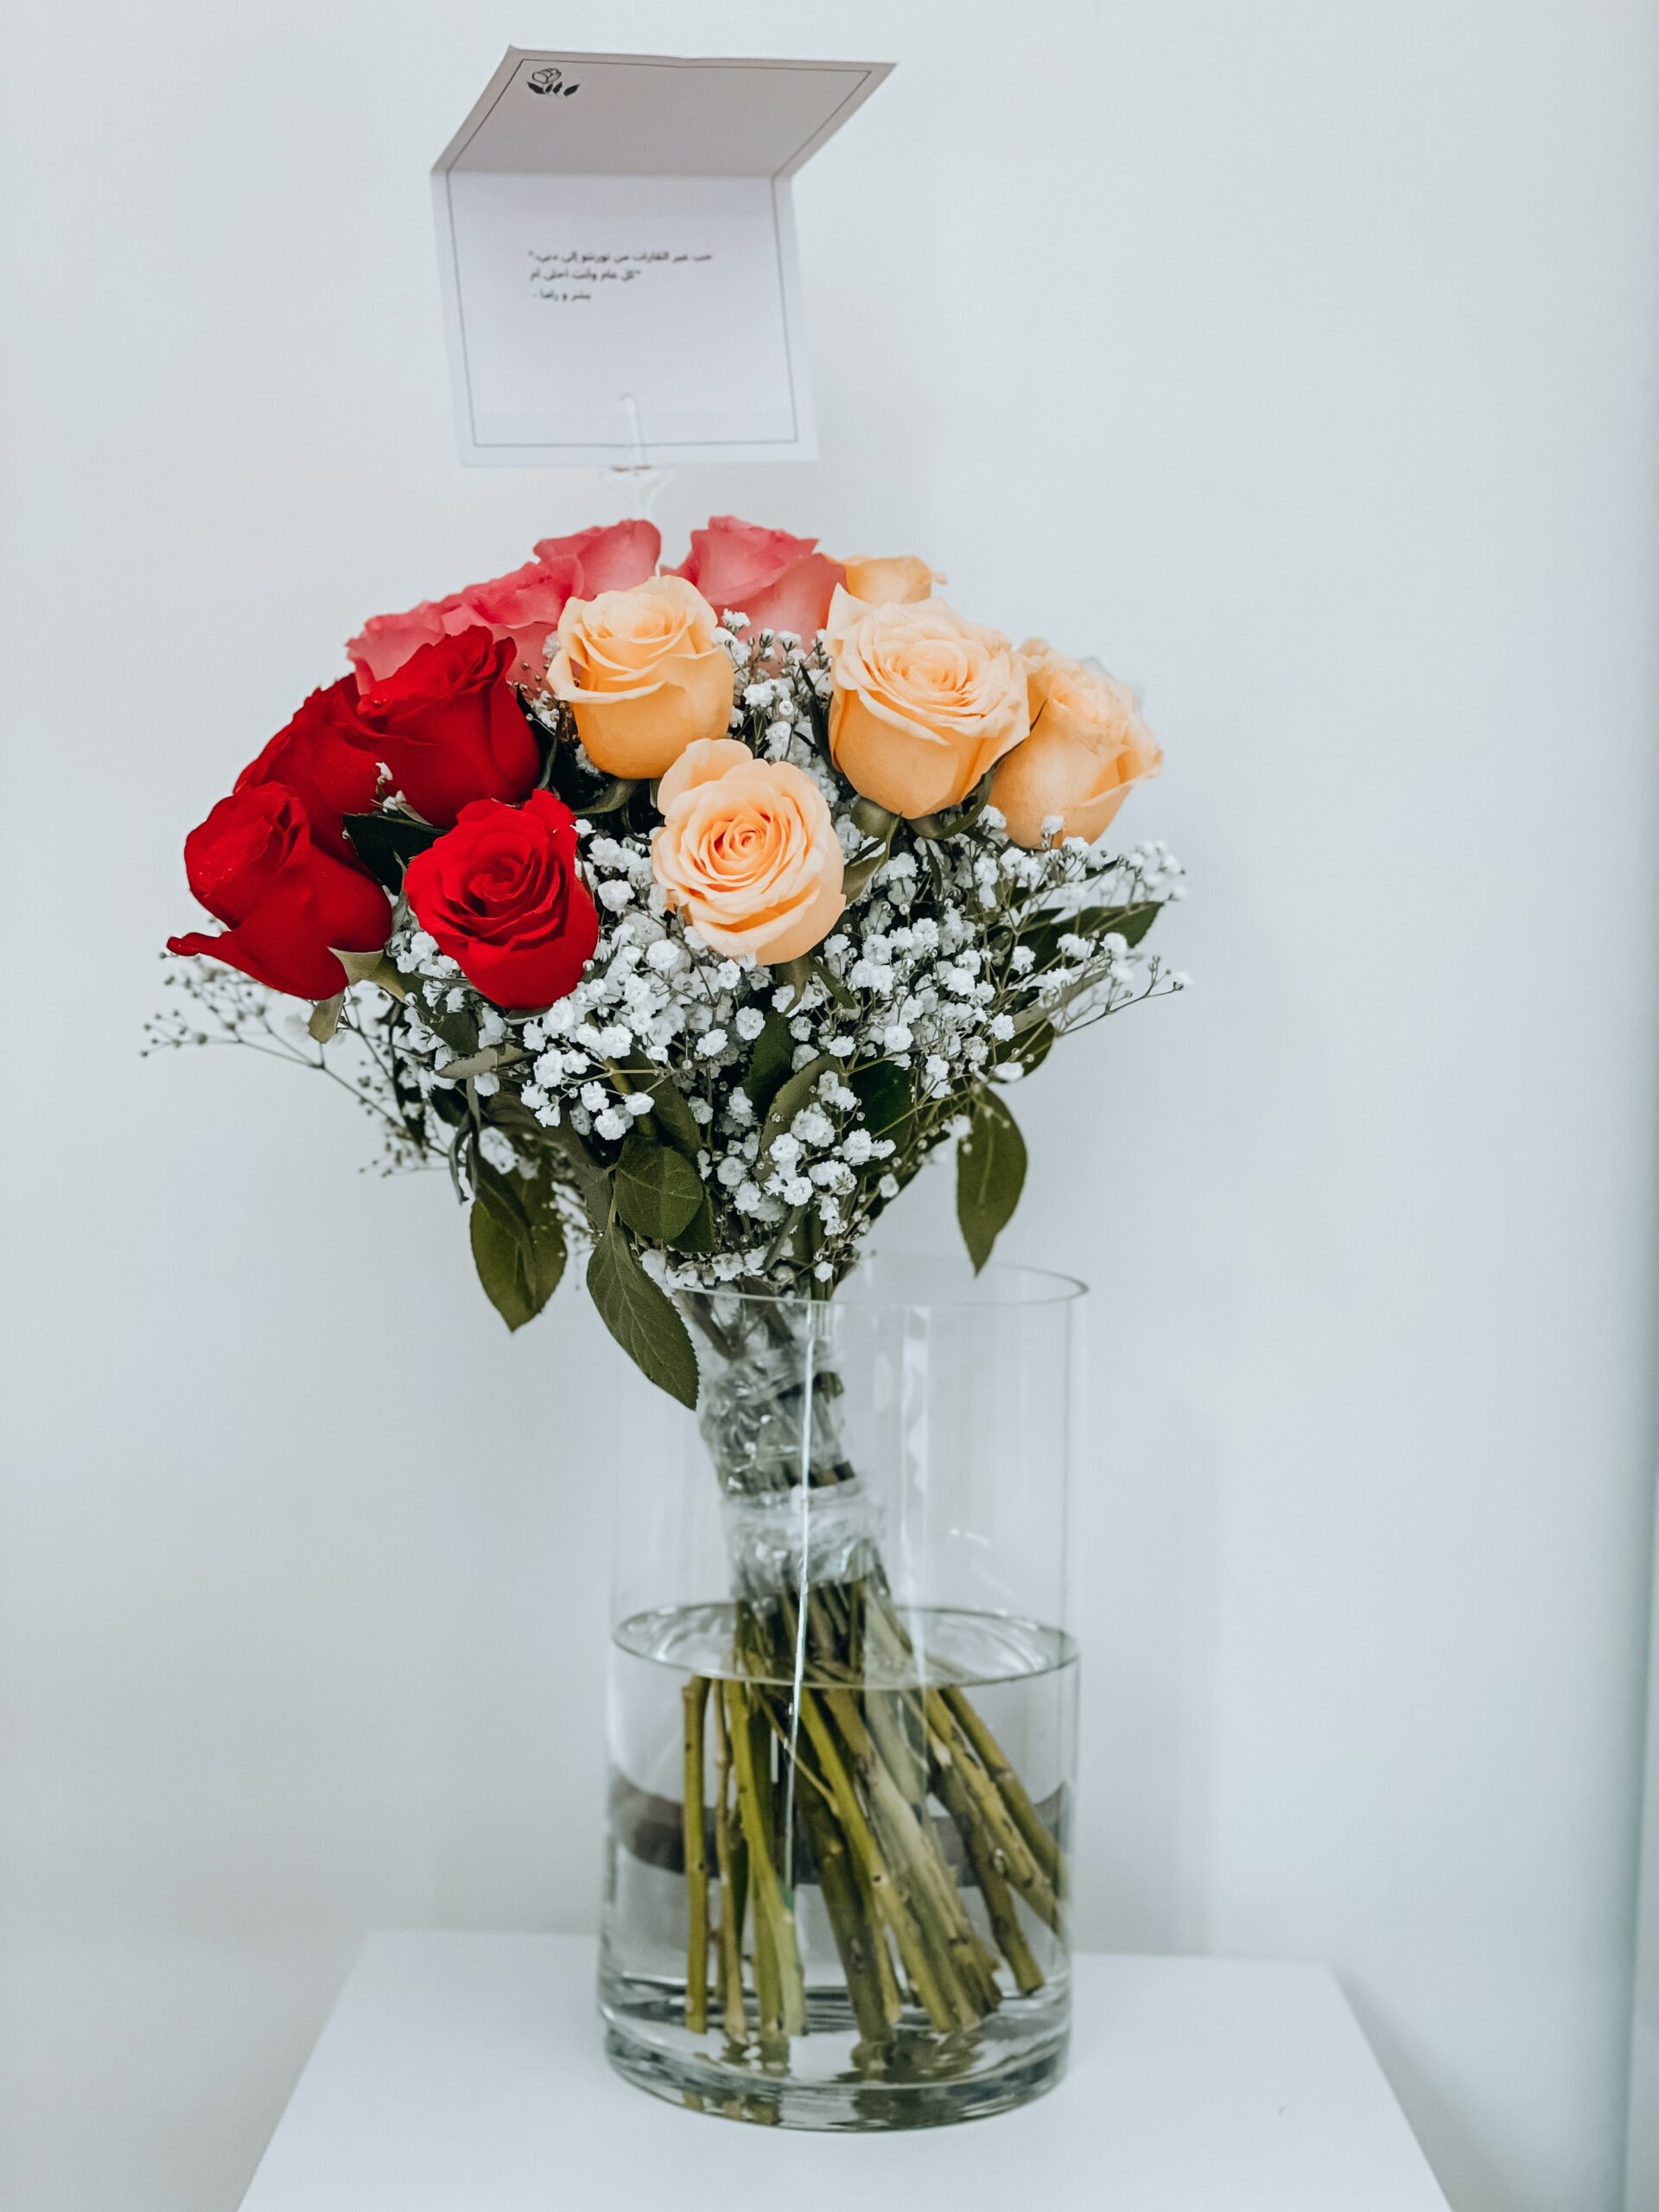 תצוגת פרחים תוססת אצל חנות פרחים מקומית בבאר שבע